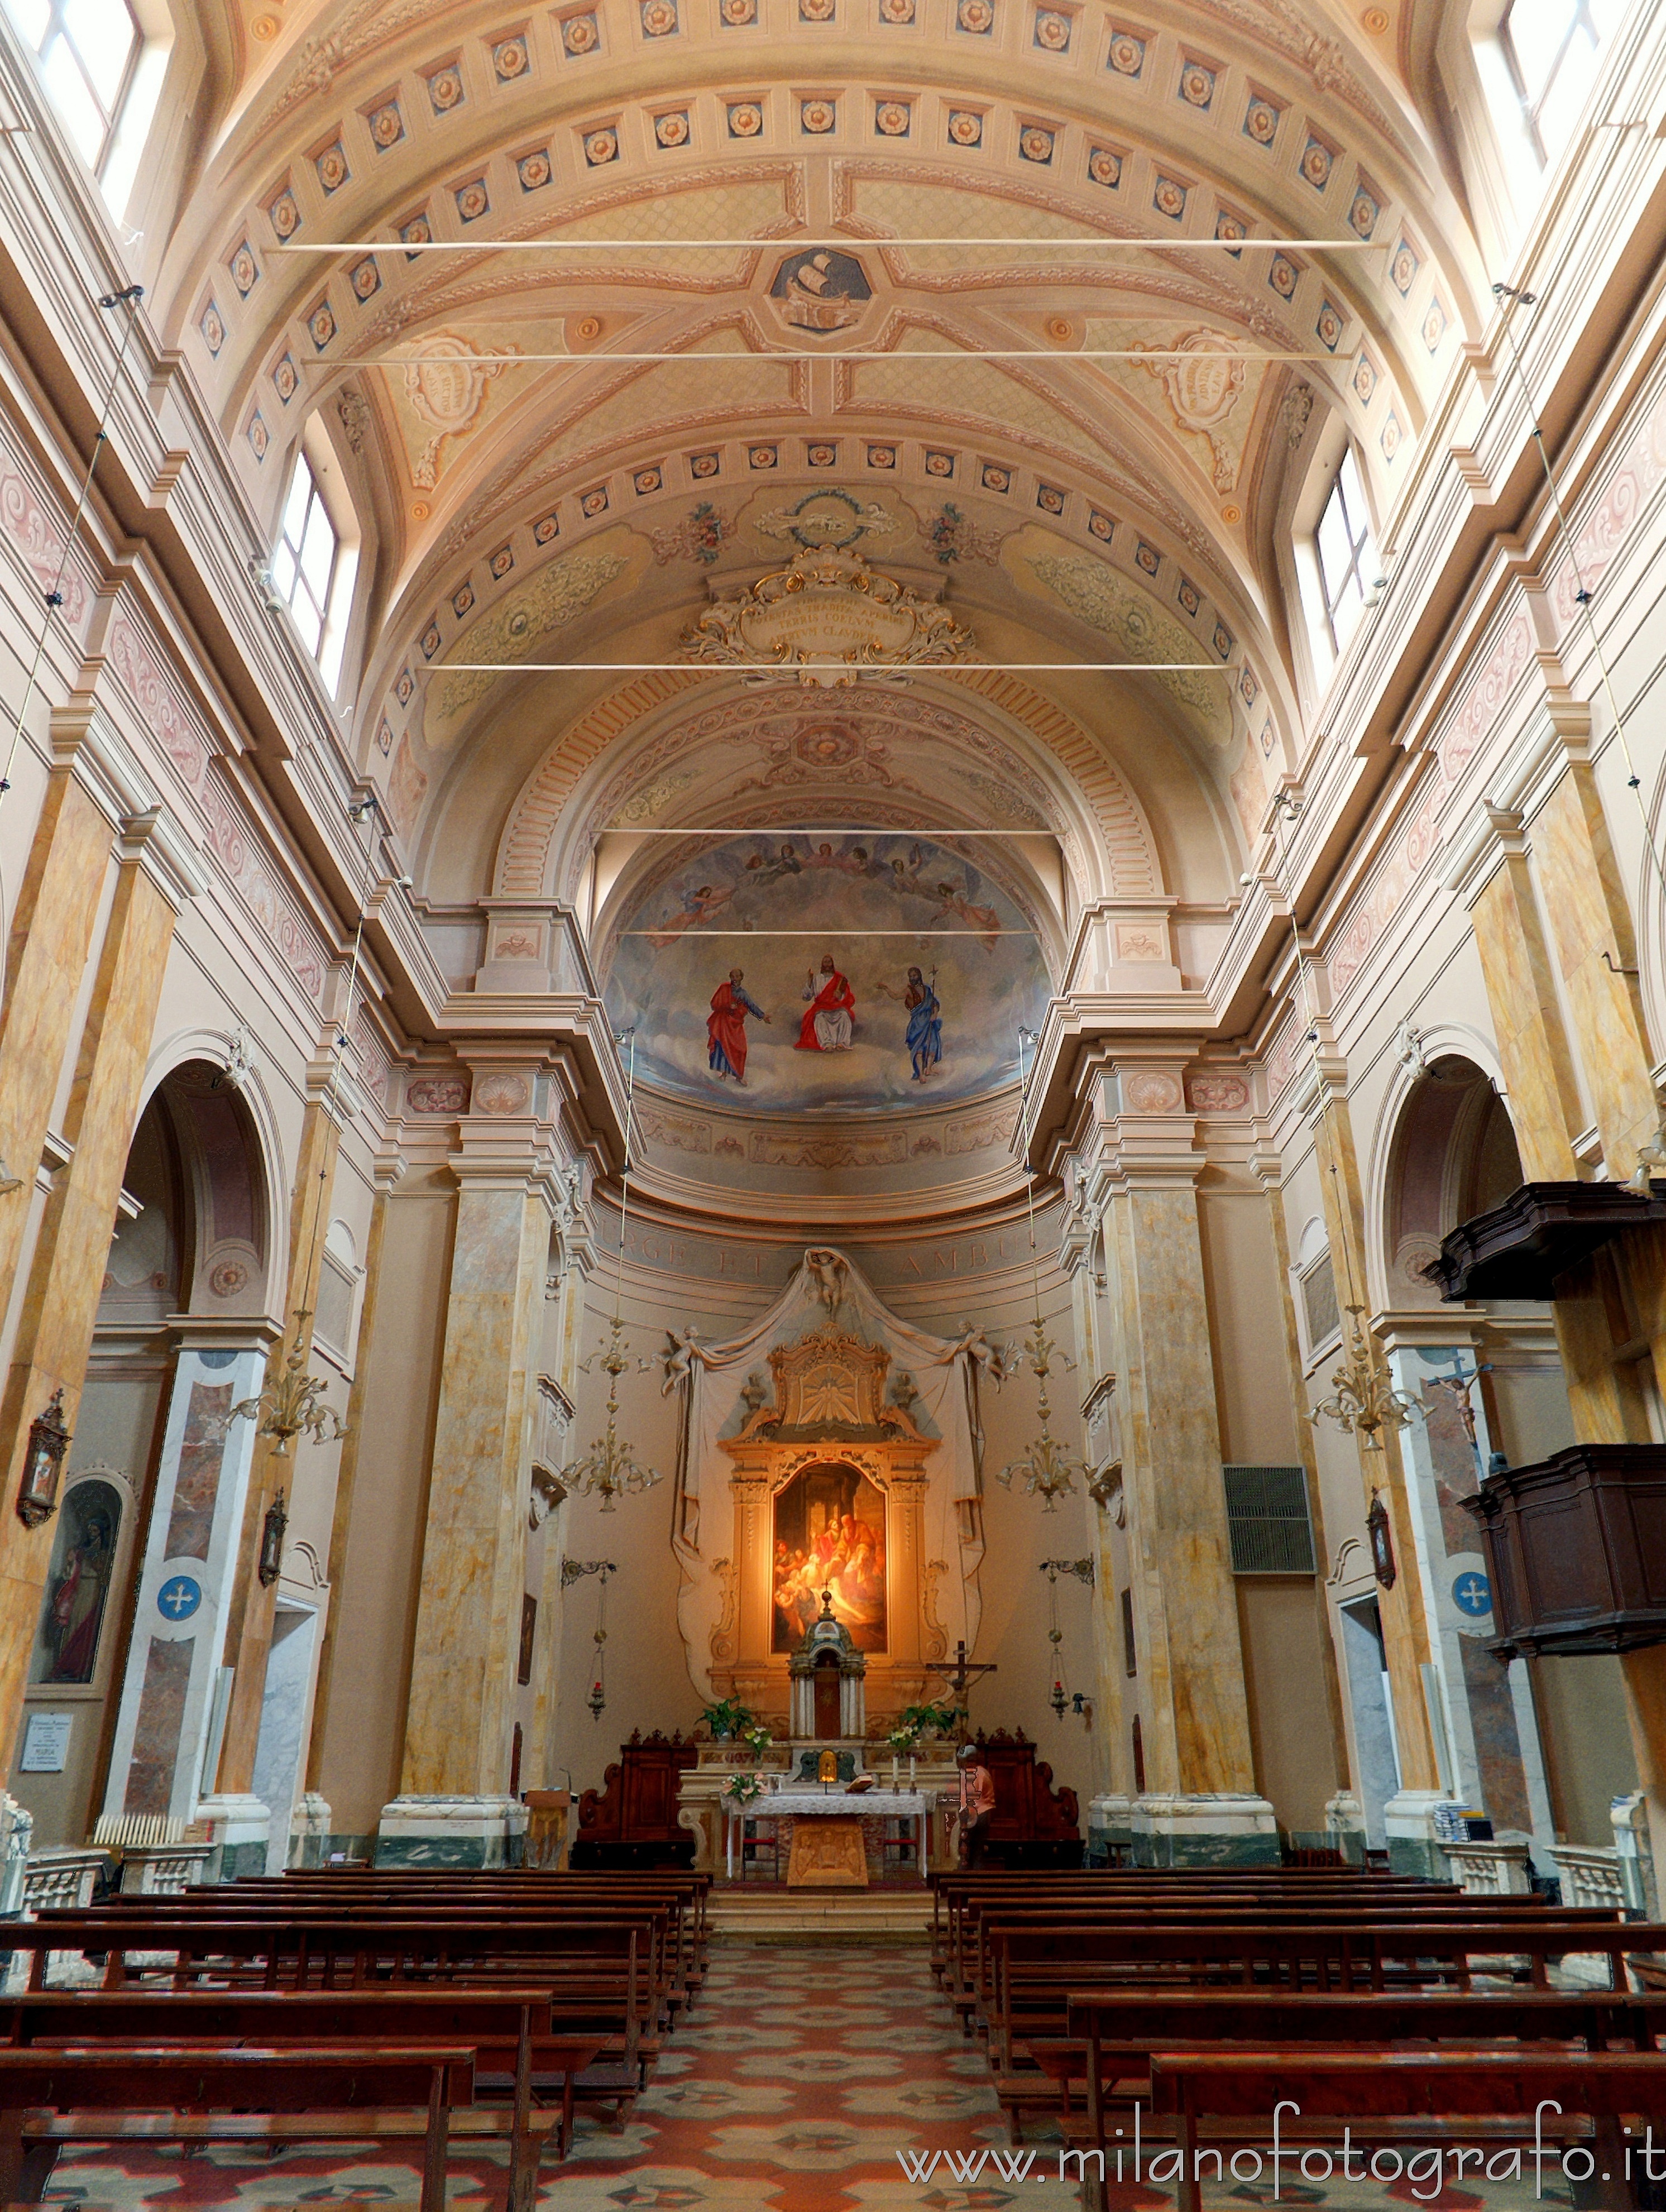 San Giovanni in Marignano (Rimini, Italy): Interior of the Church of San Pietro - San Giovanni in Marignano (Rimini, Italy)